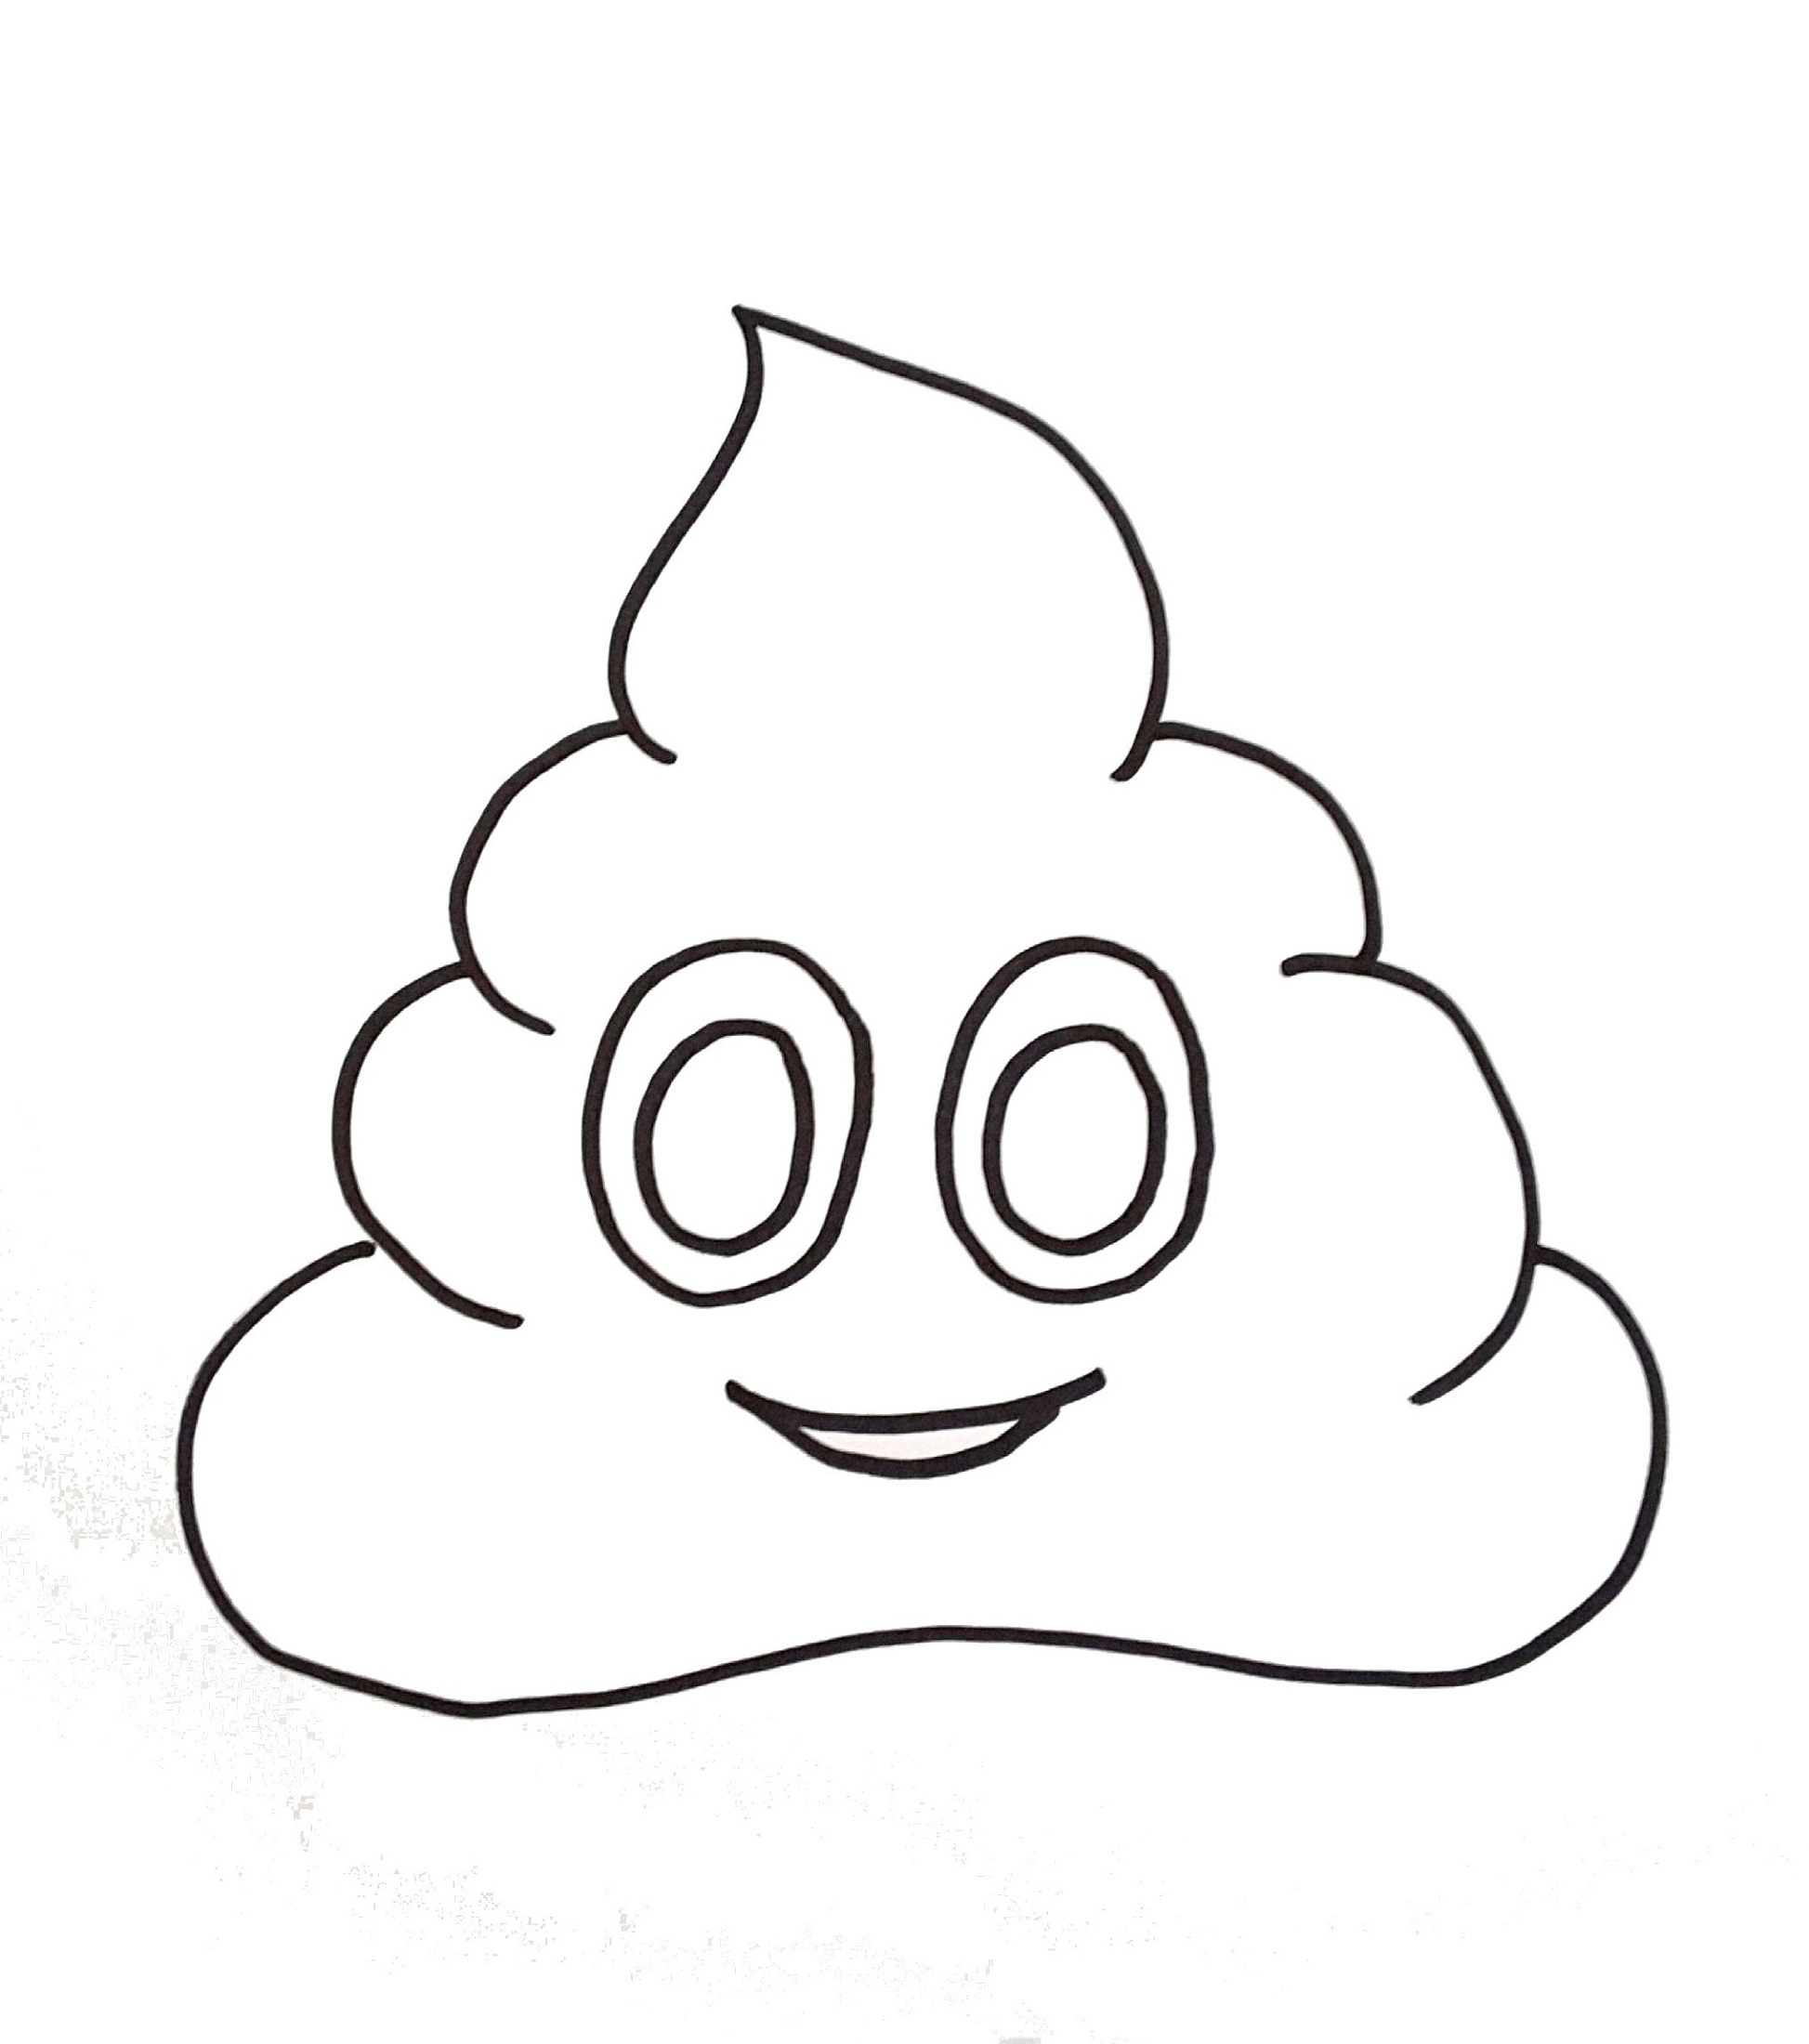 poop-emoji-coloring-page-poop-1